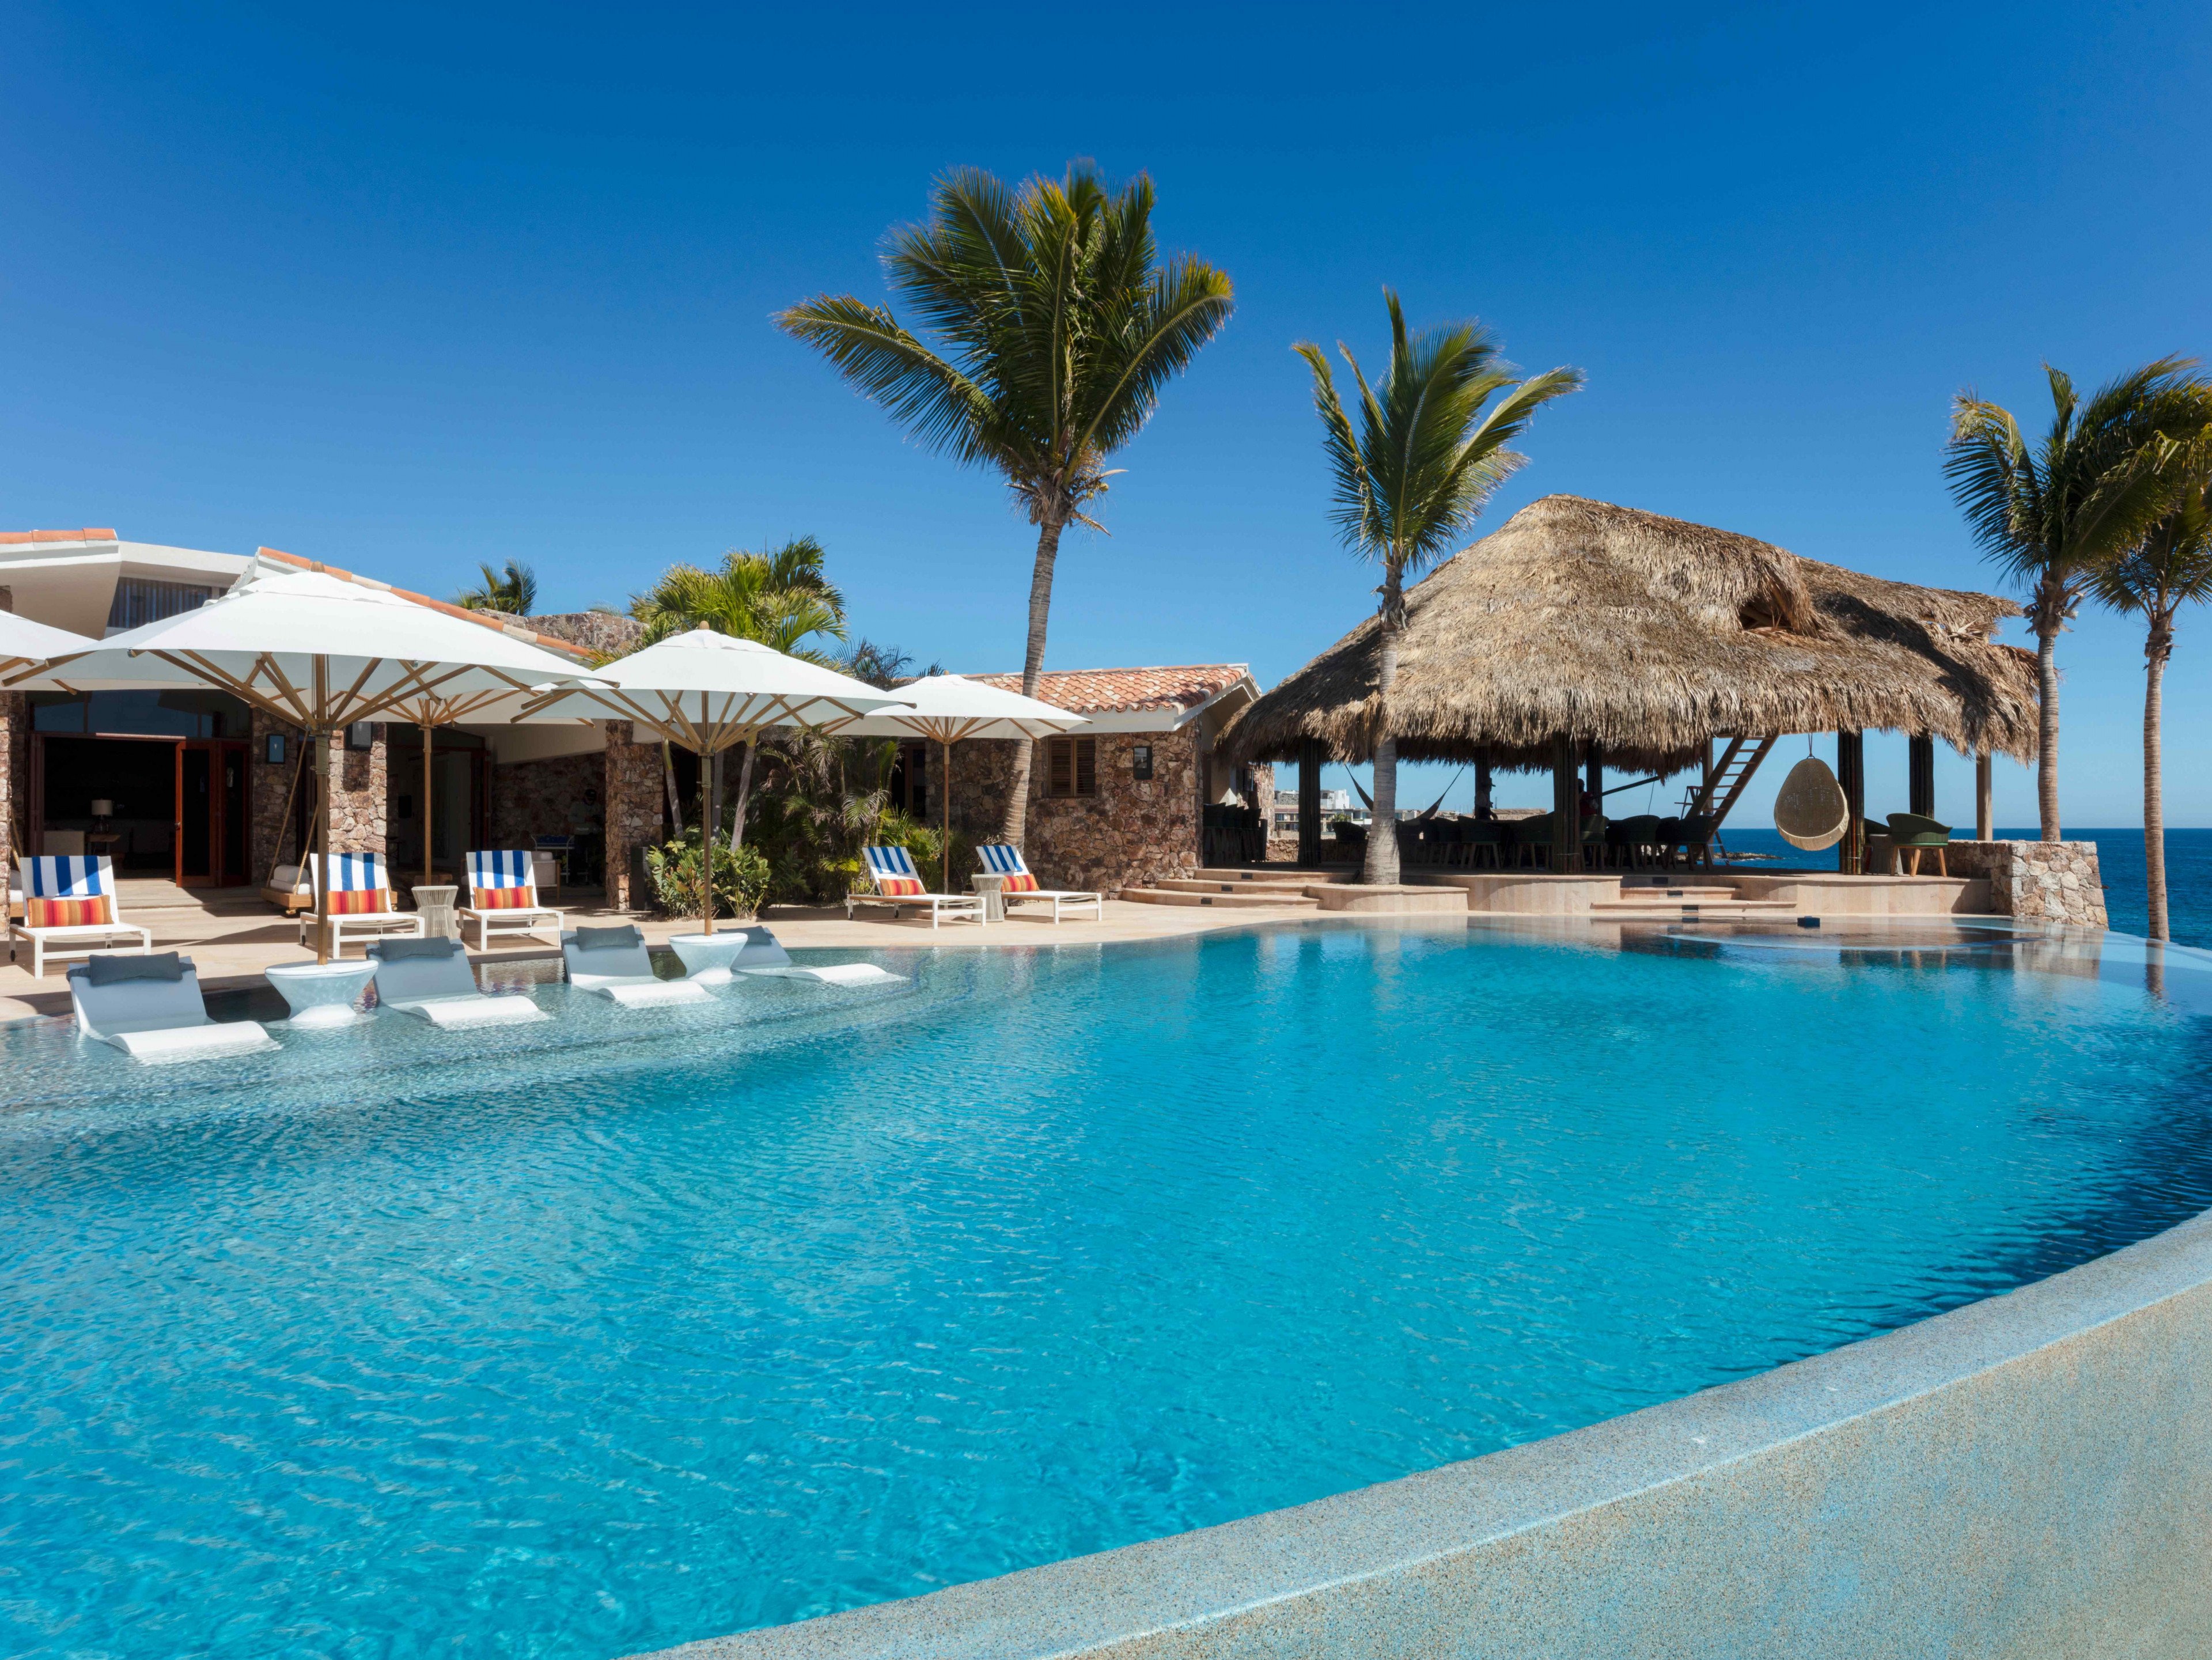 Cielito del Mar Cabo villas with pools